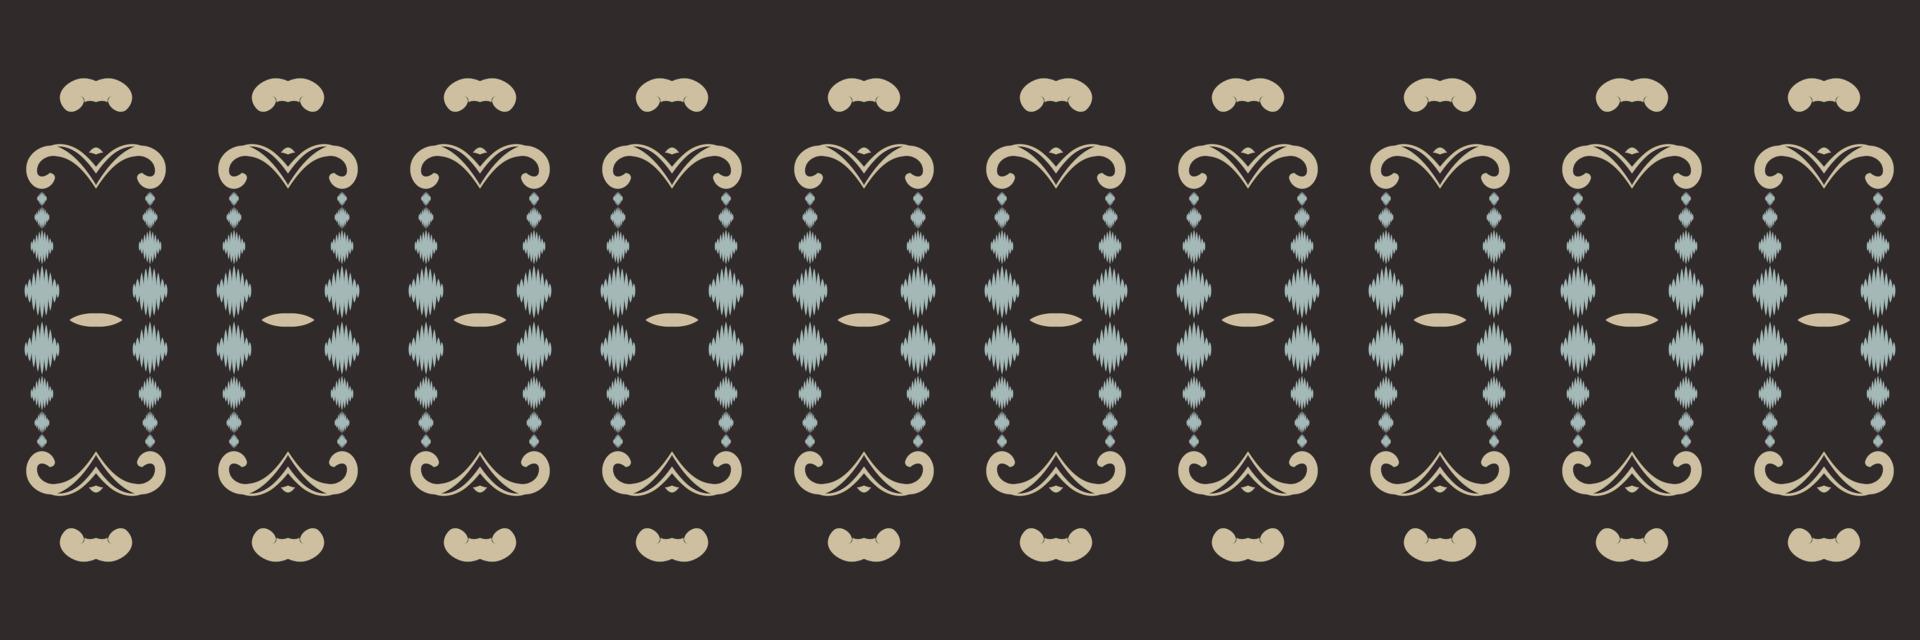 Ikat-Punkte Stammes-Chevron-nahtloses Muster. ethnische geometrische ikkat batik digitaler vektor textildesign für drucke stoff saree mughal pinsel symbol schwaden textur kurti kurtis kurtas